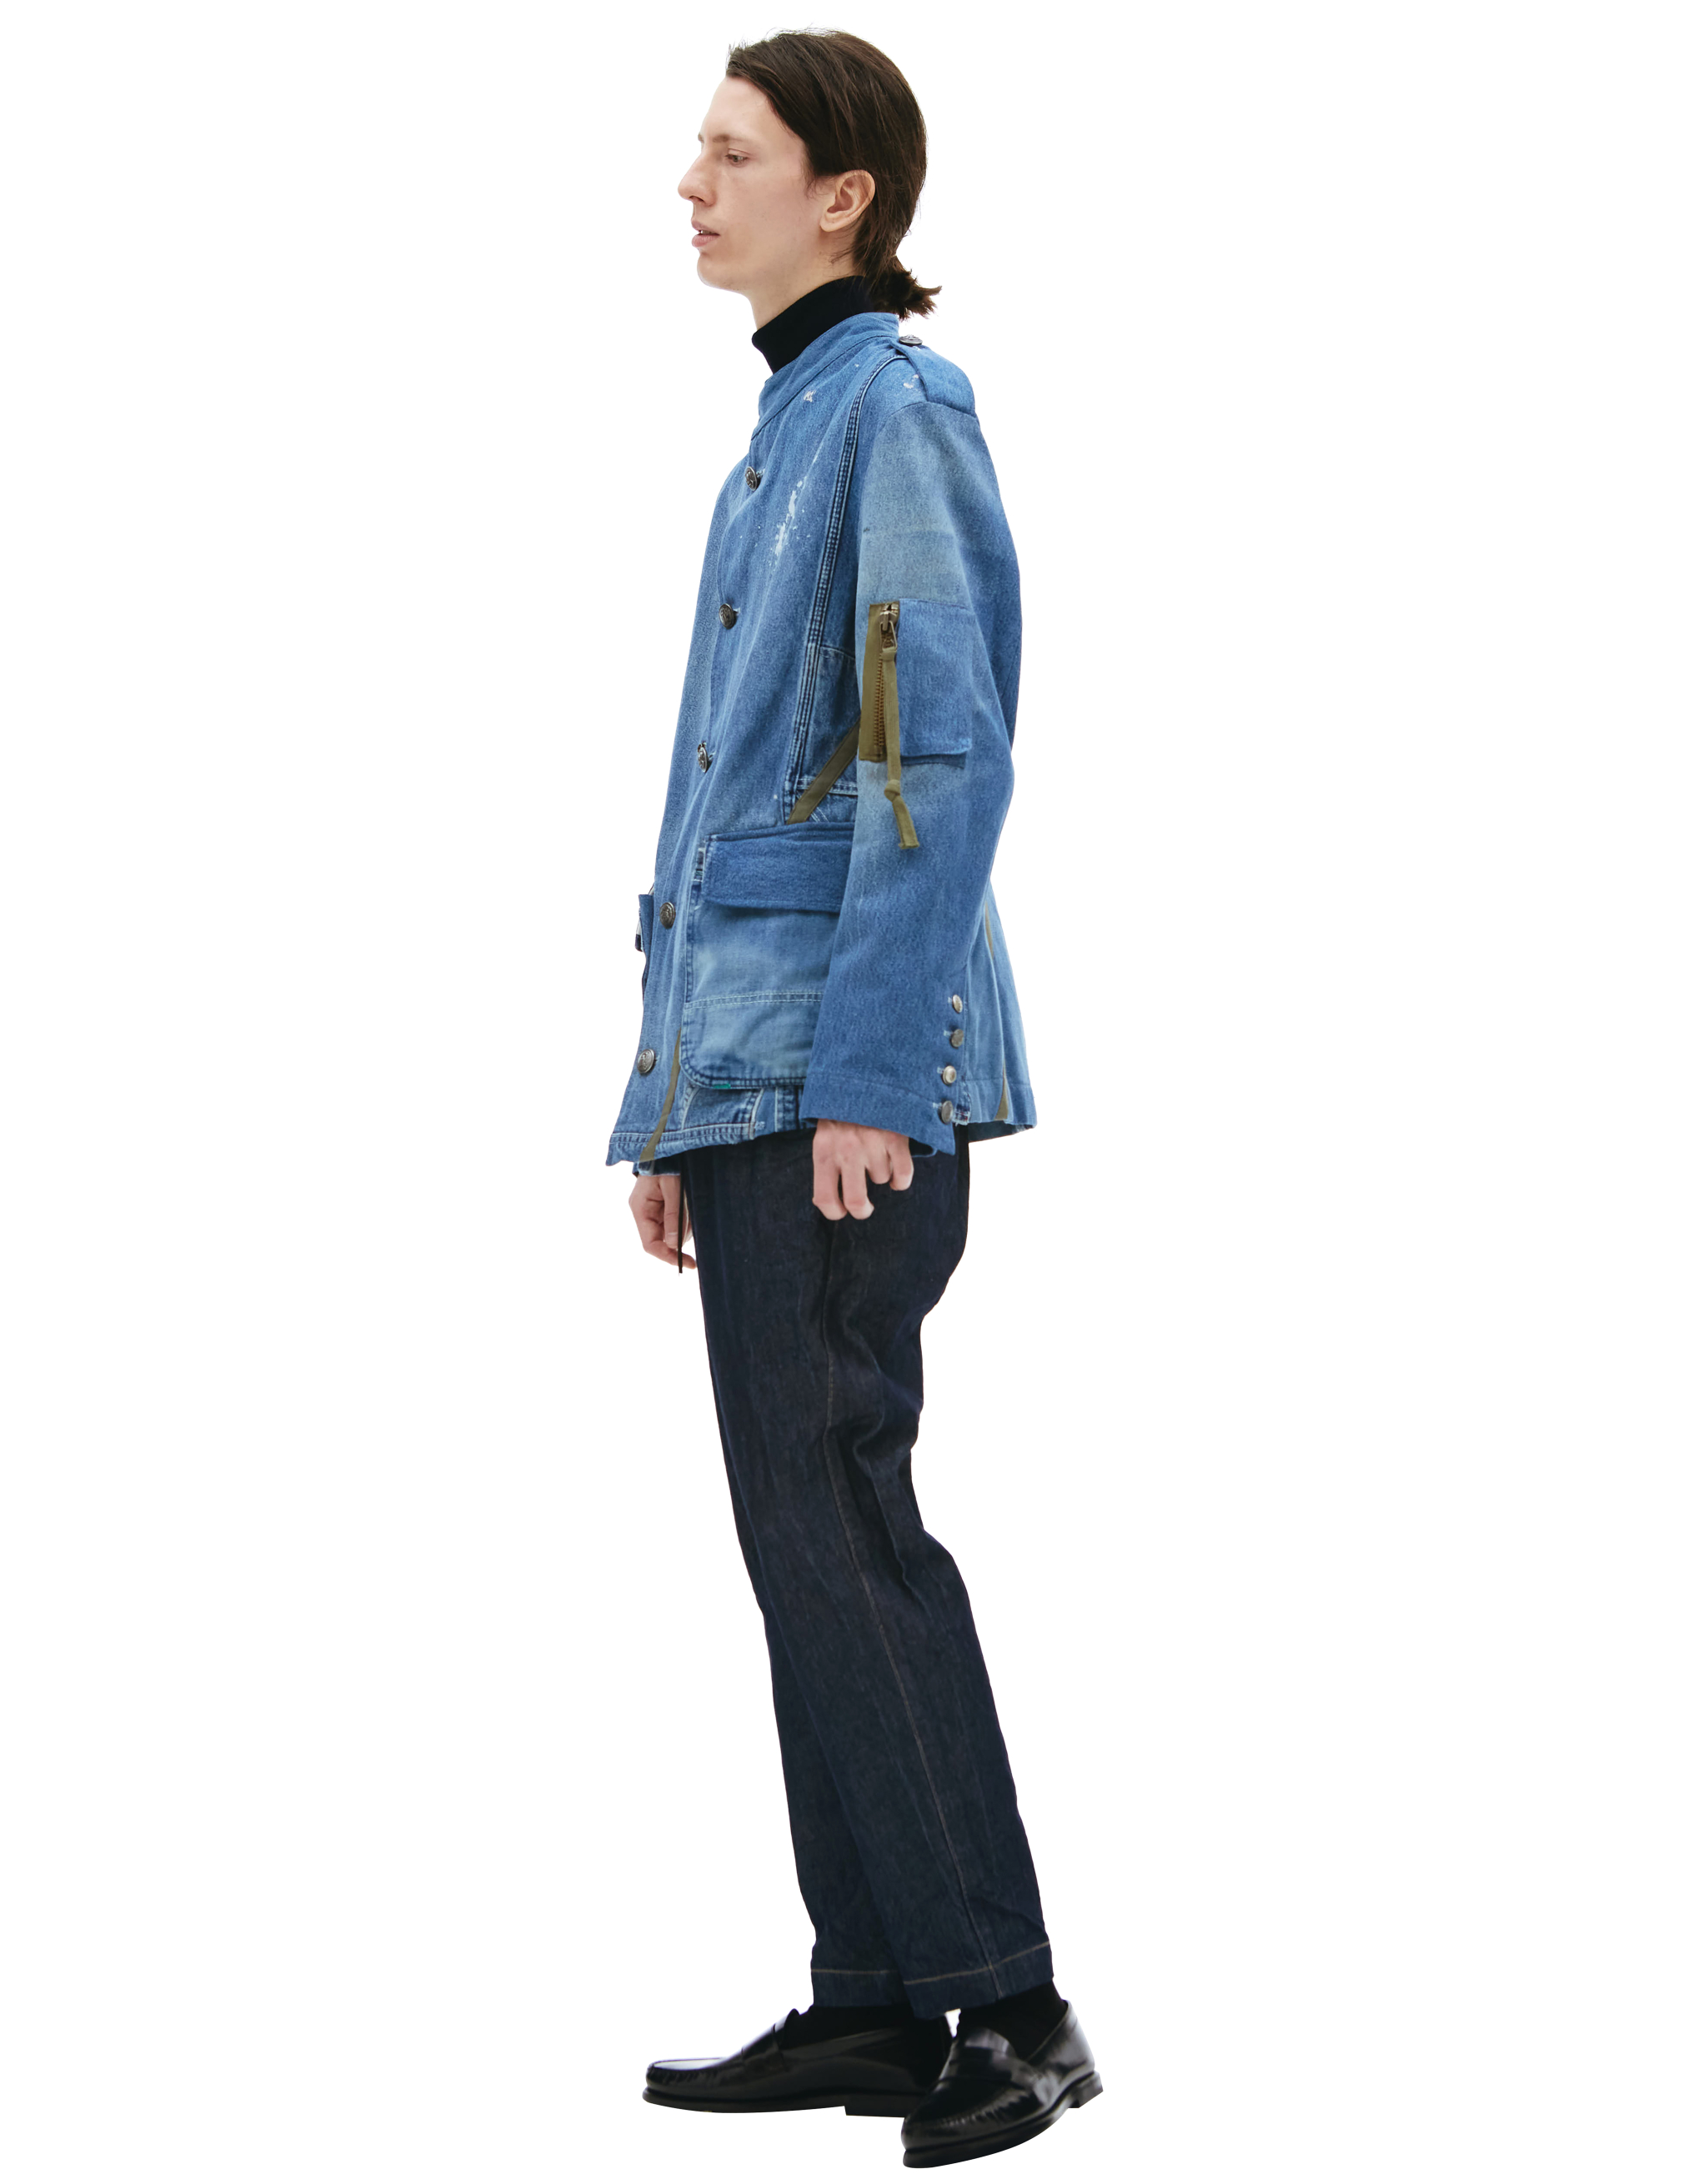 Джинсовый пиджак Officer Ollie Greg Lauren DM016, размер 5;4 - фото 2